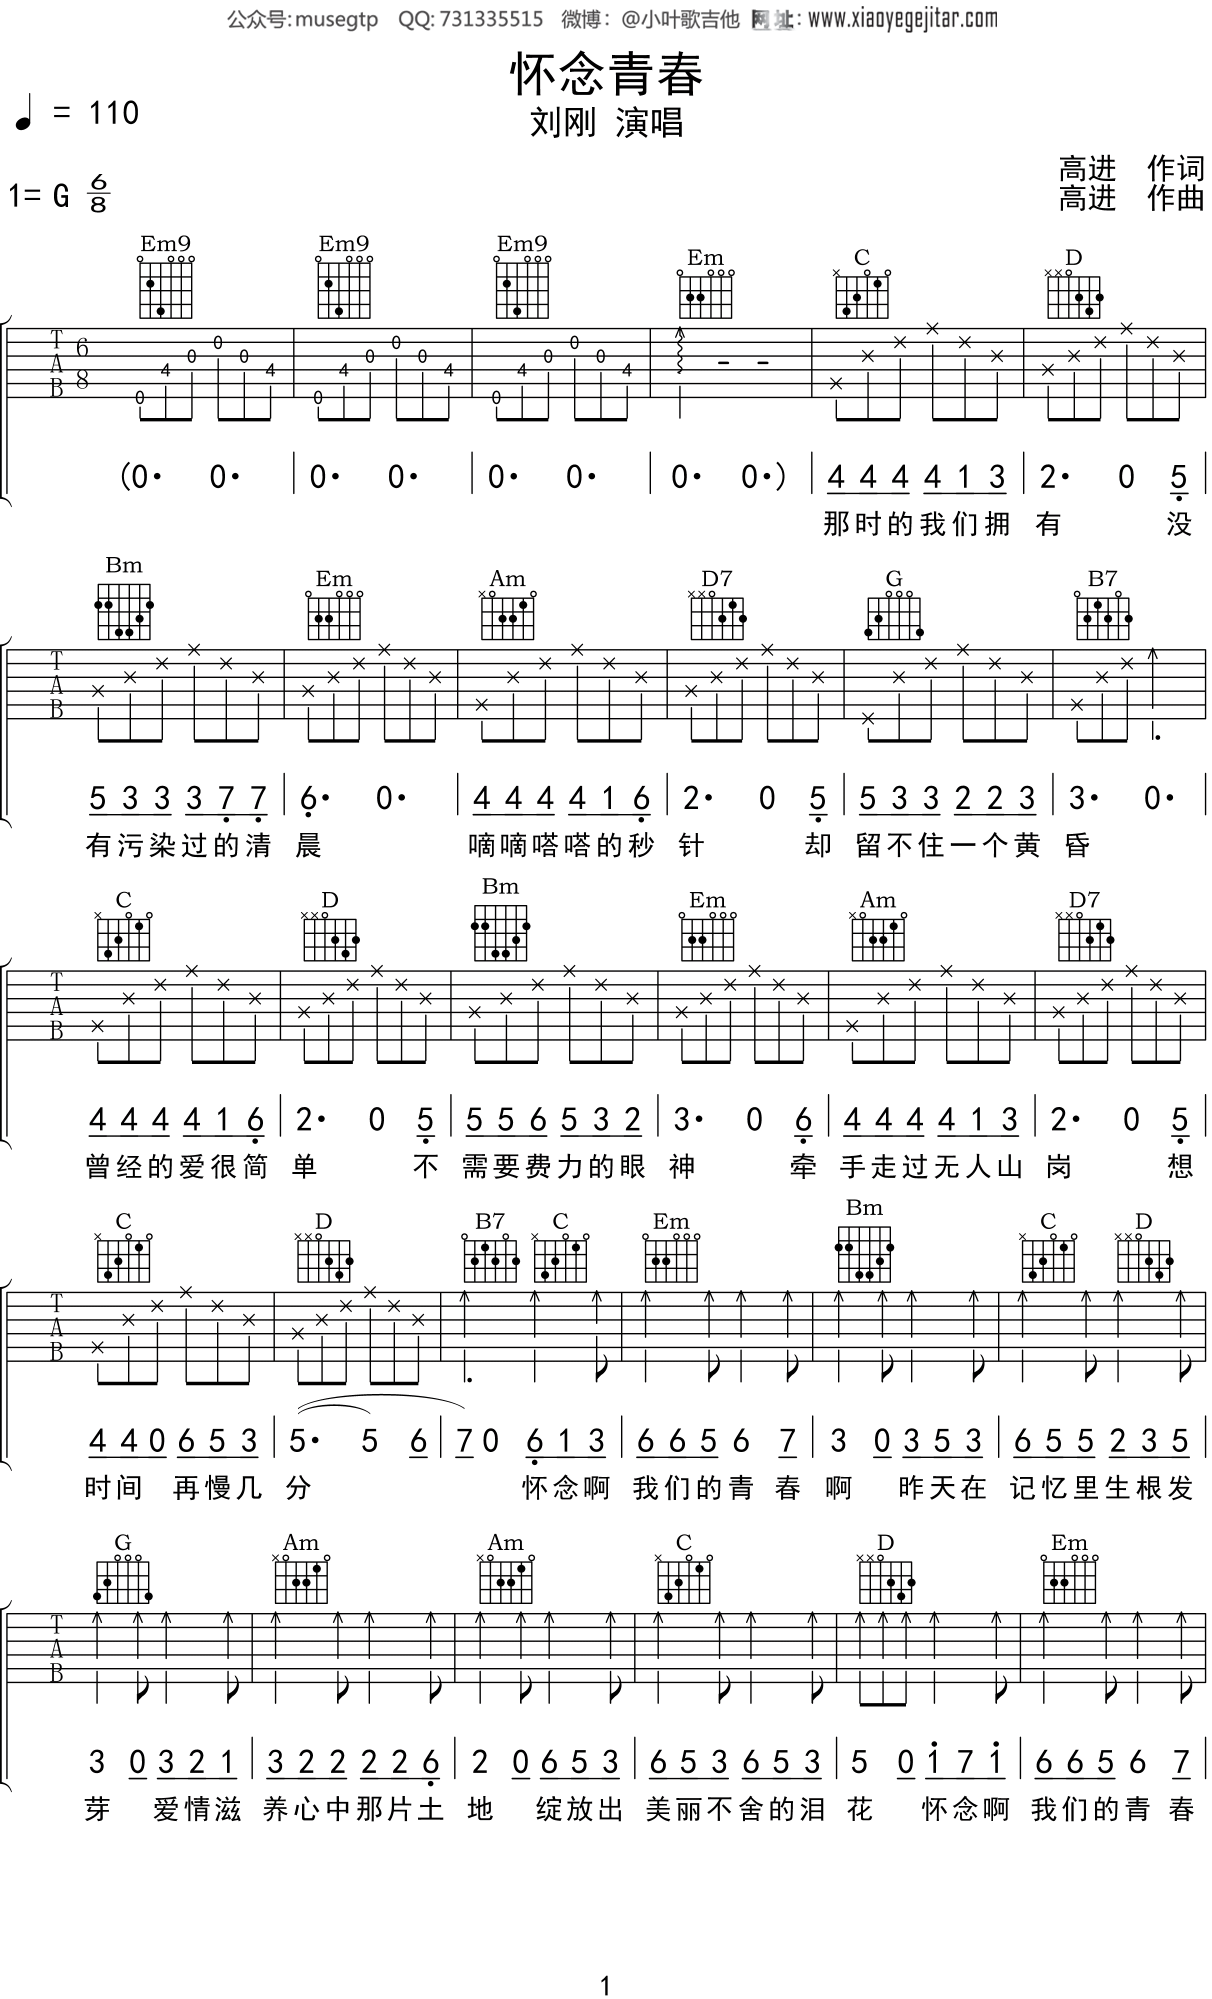 刘刚(2) - 怀念青春 [弹唱 伴奏 完形吉他] 吉他谱